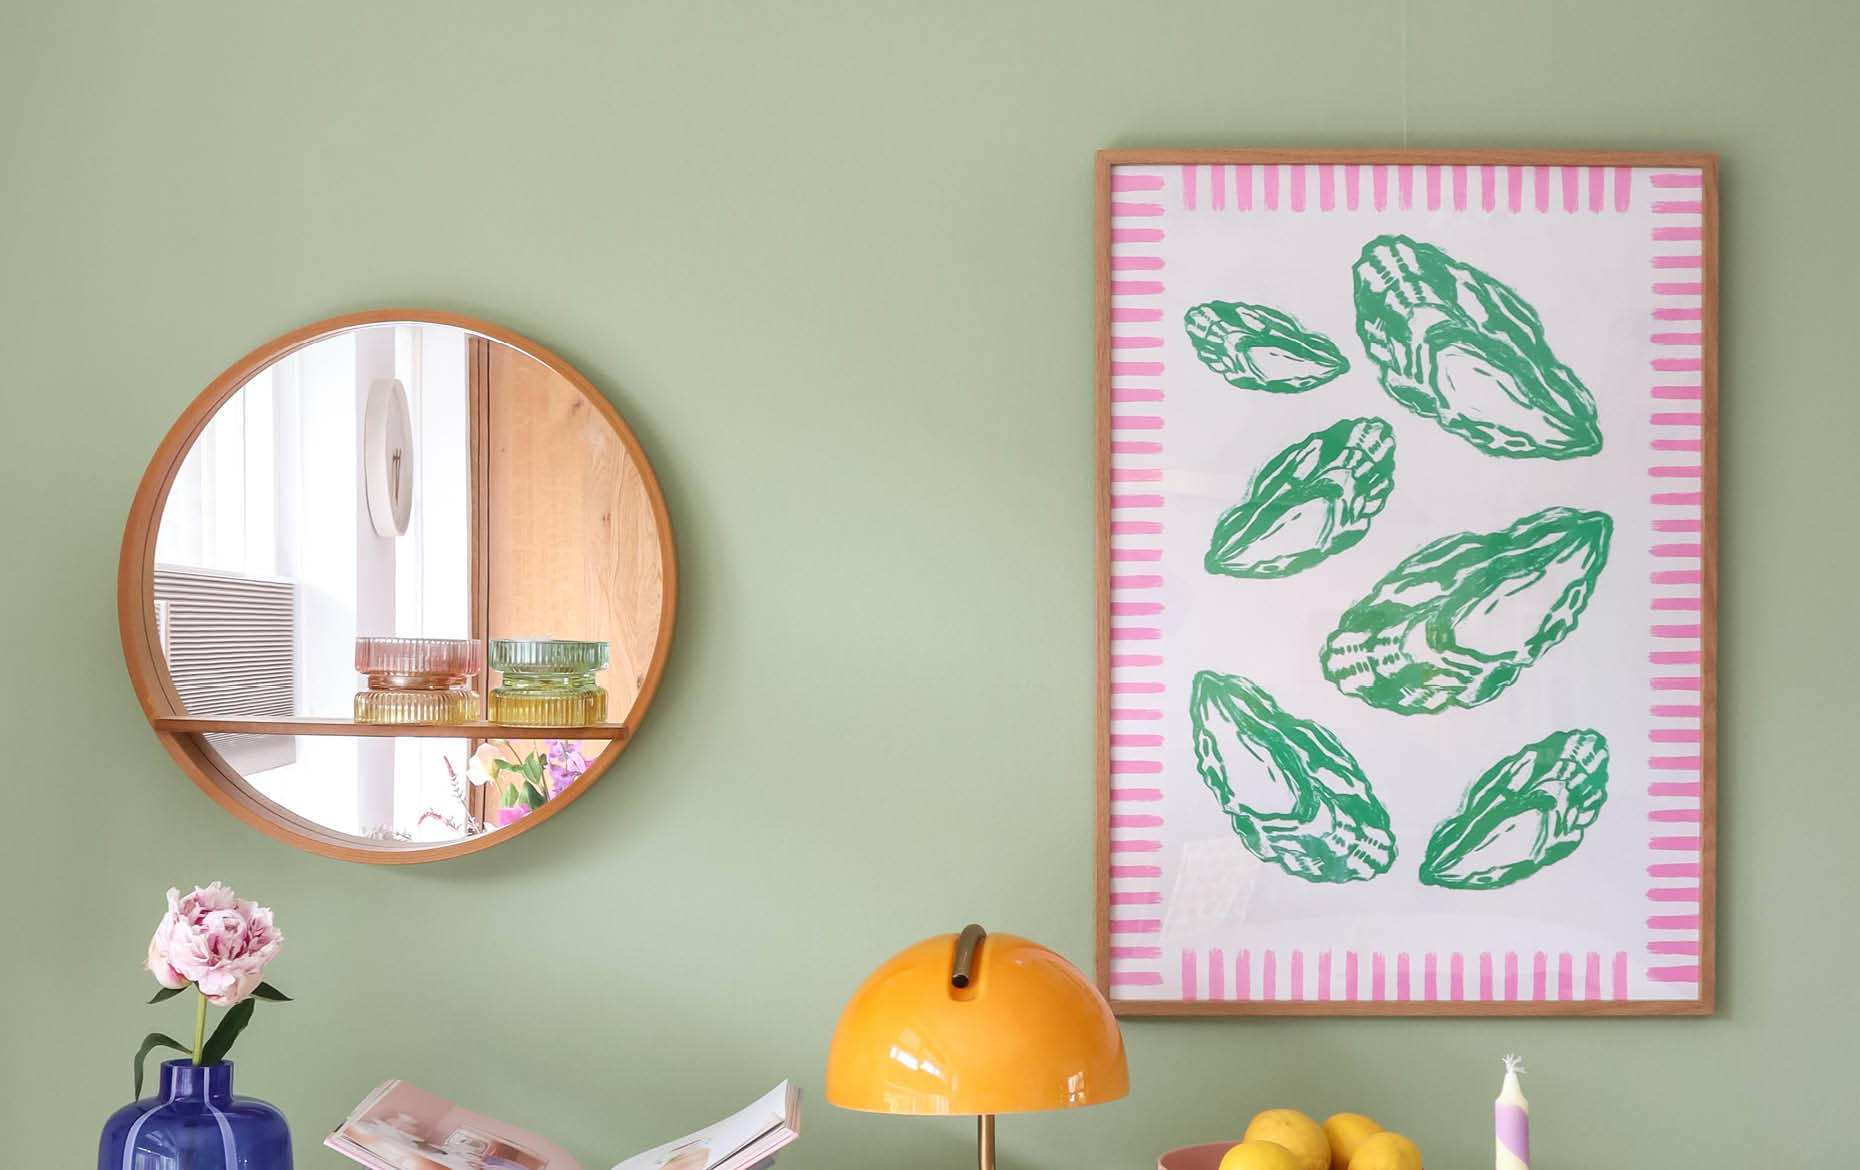 NL groene wand met schelpen poster en spiegel